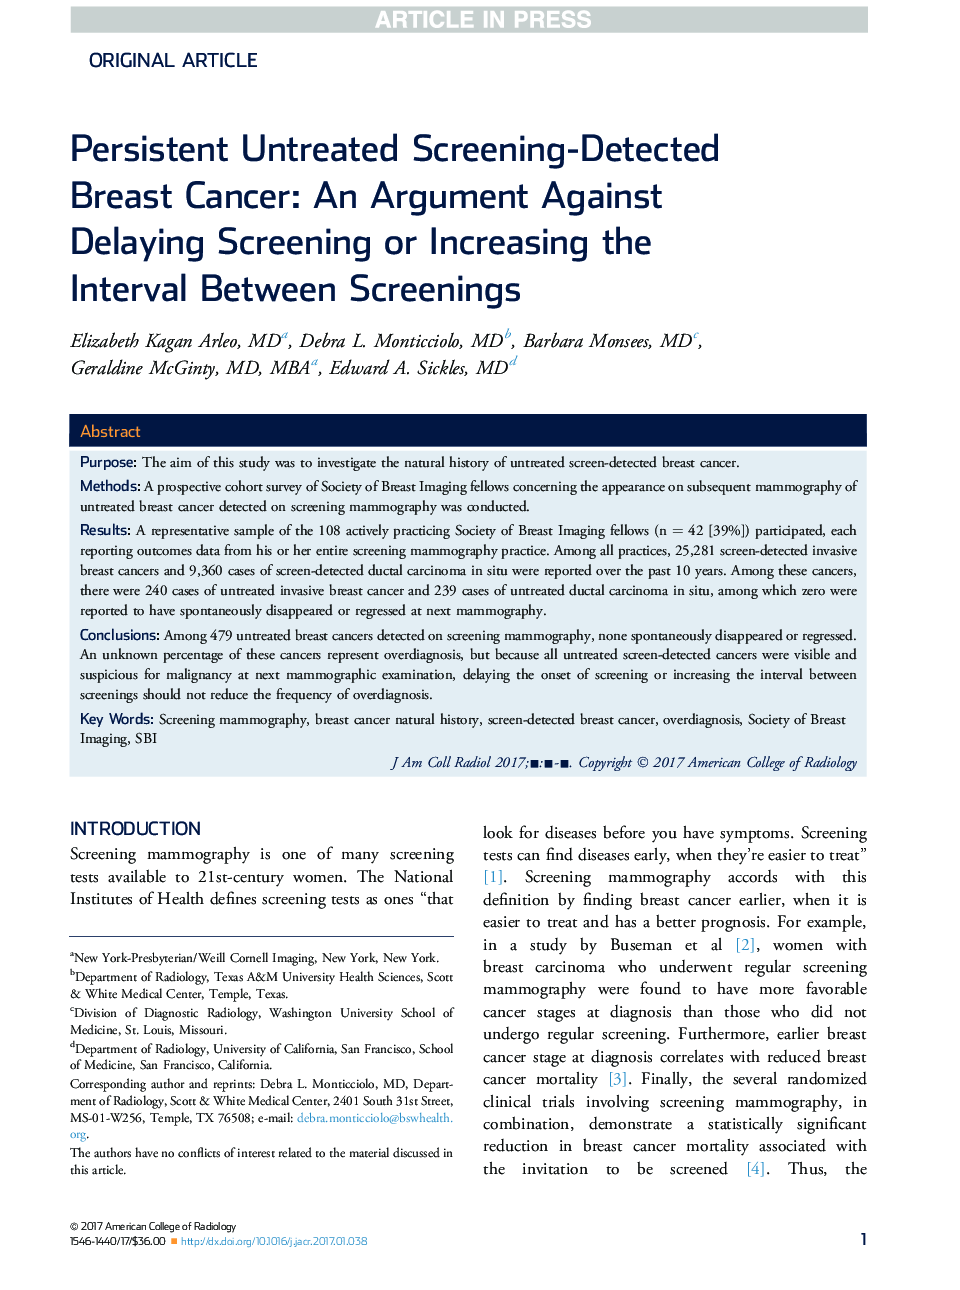 سرطان پستان تشخیص داده شده با غربالگری پایدار: یک بحث در برابر بازپرداخت عقب ماندگی یا افزایش فاصله بین بازدیدها 